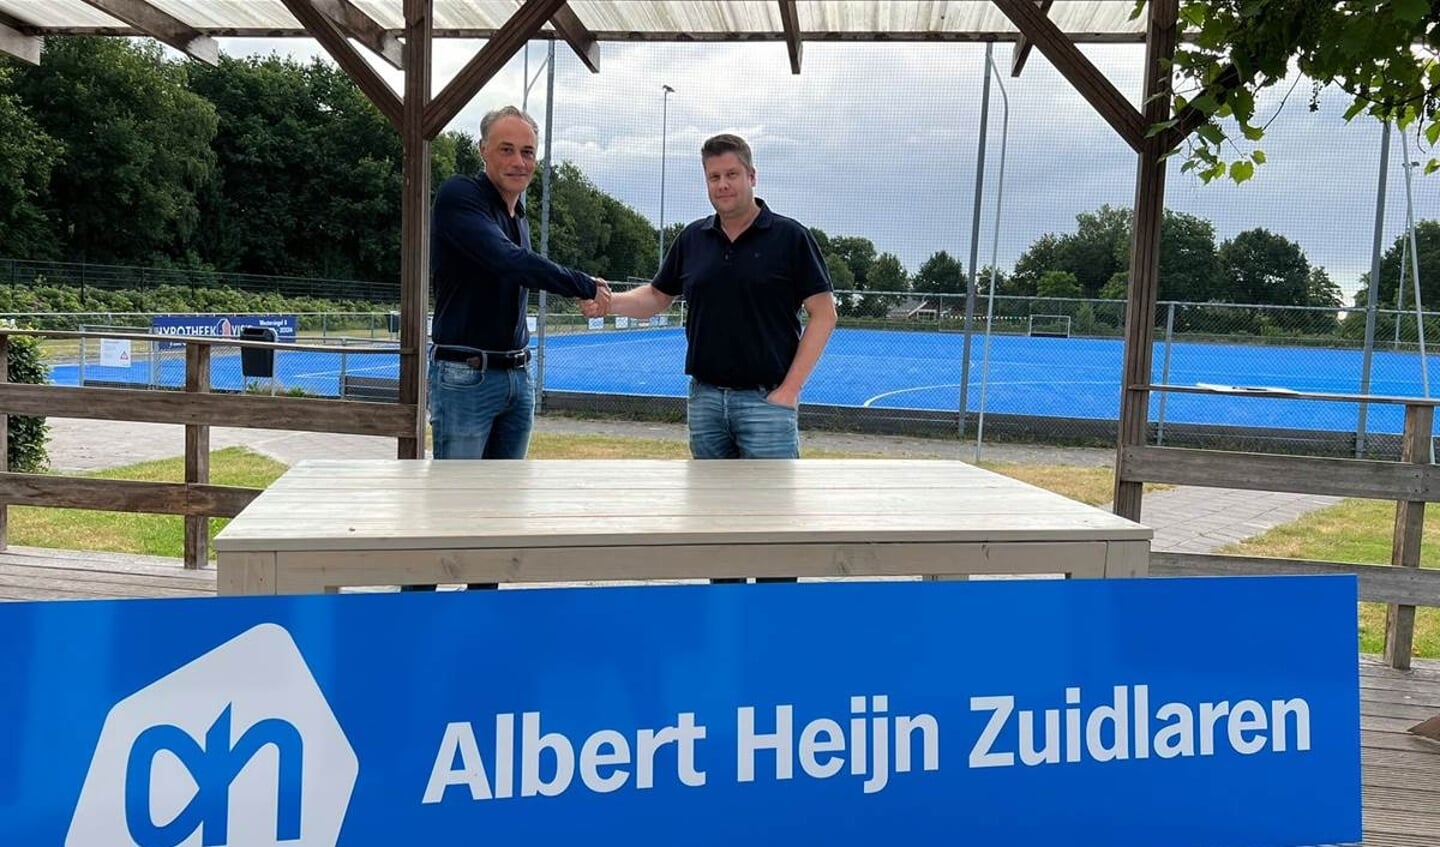 Hans Hendrikse van Albert Heijn Zuidlaren met voorzitter Lars Roossien van HC De Hondsrug.